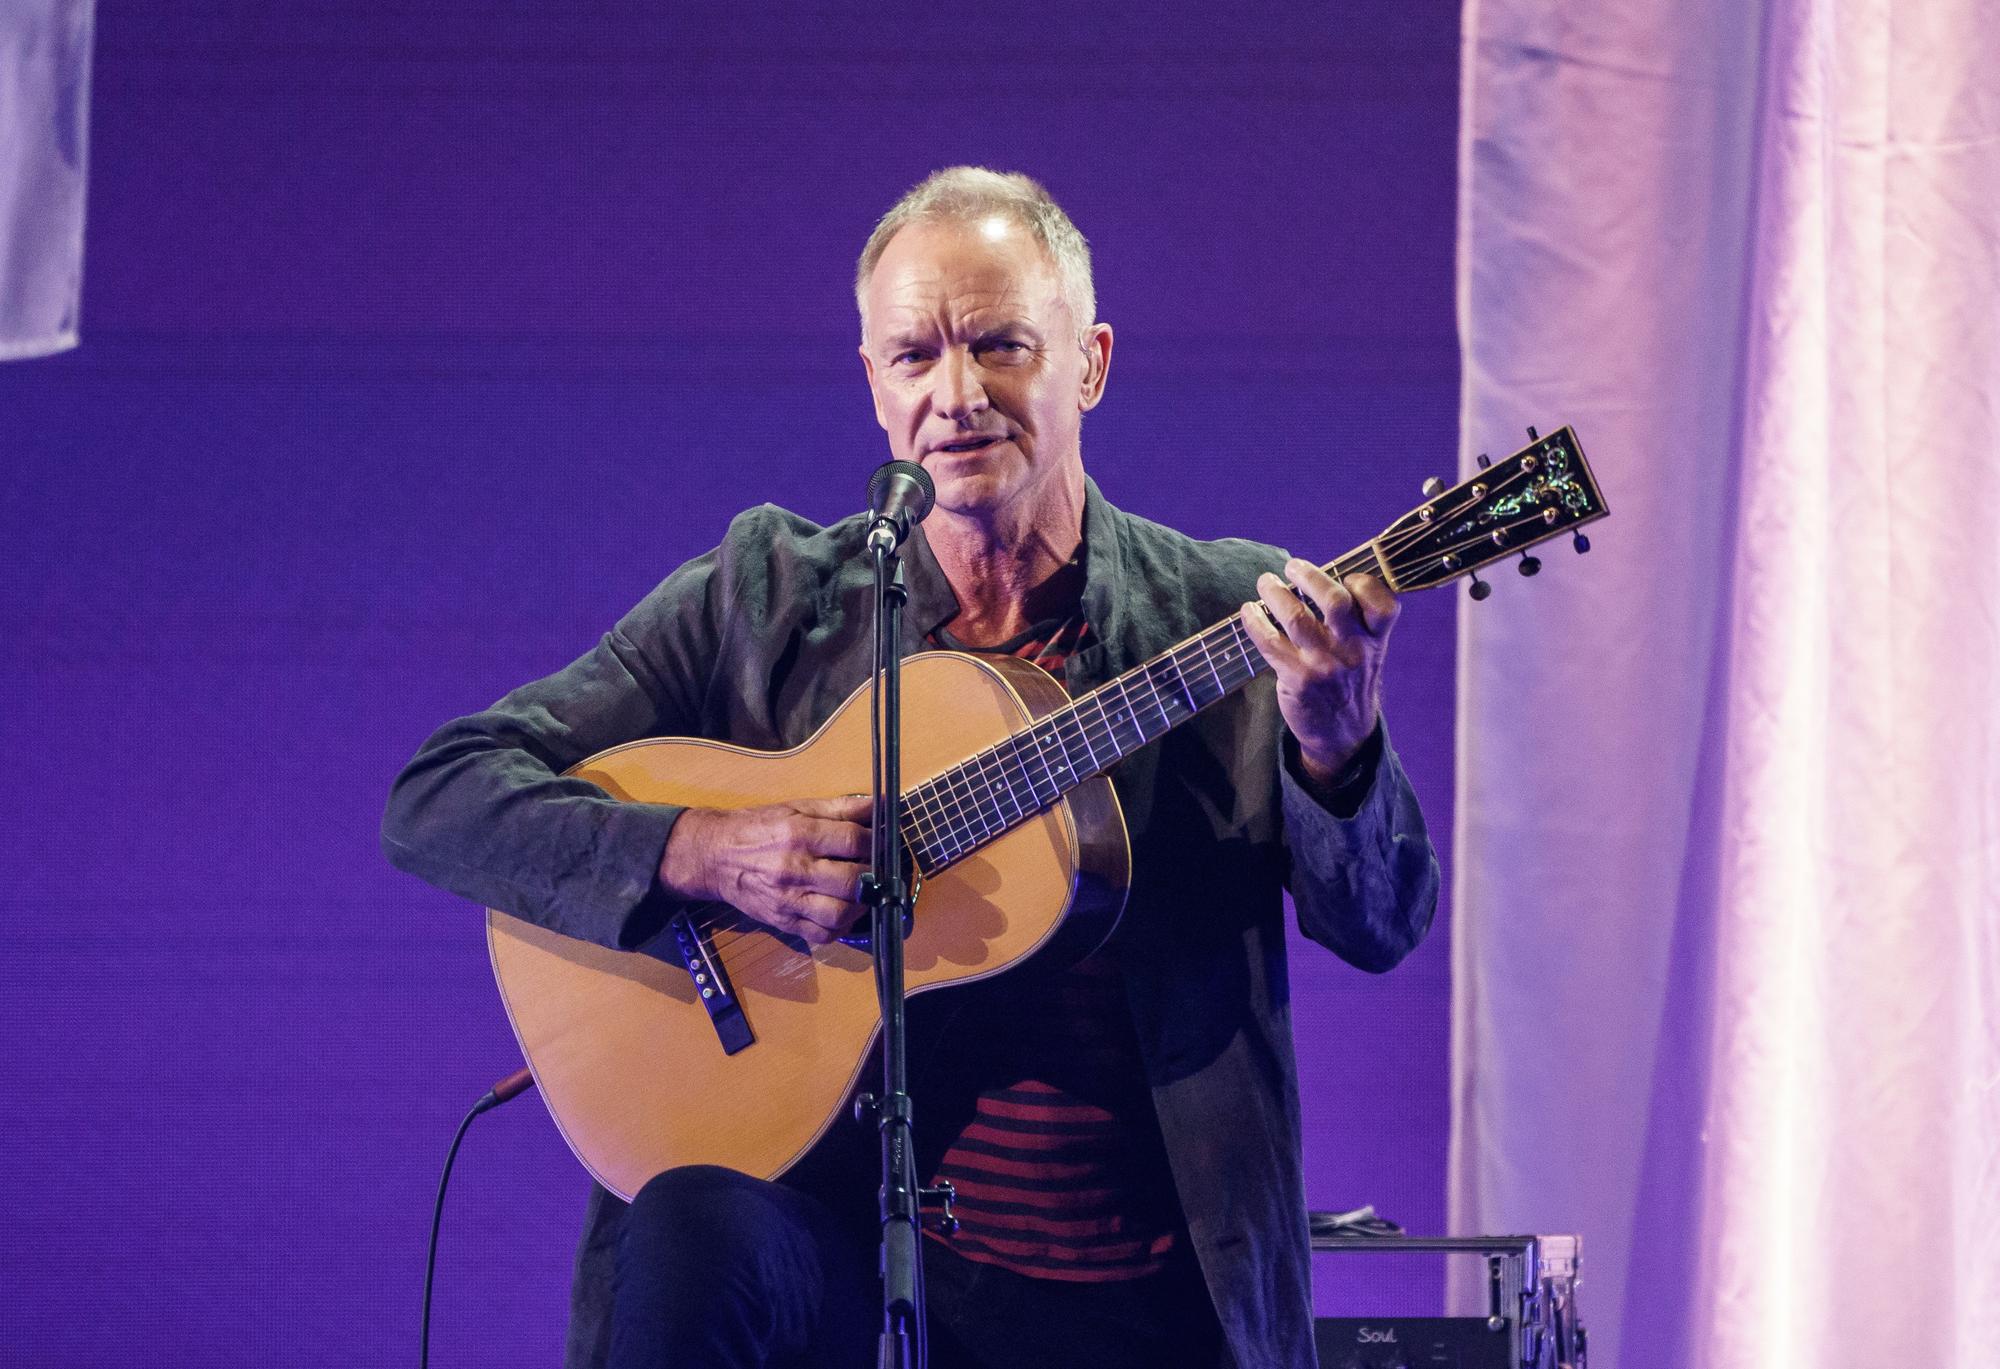 Imagen del pasado mes de septiembre del músico británico Sting, actuando en el Teatro Operettenhaus de Hamburgo durante el Reeperbahn Festival.